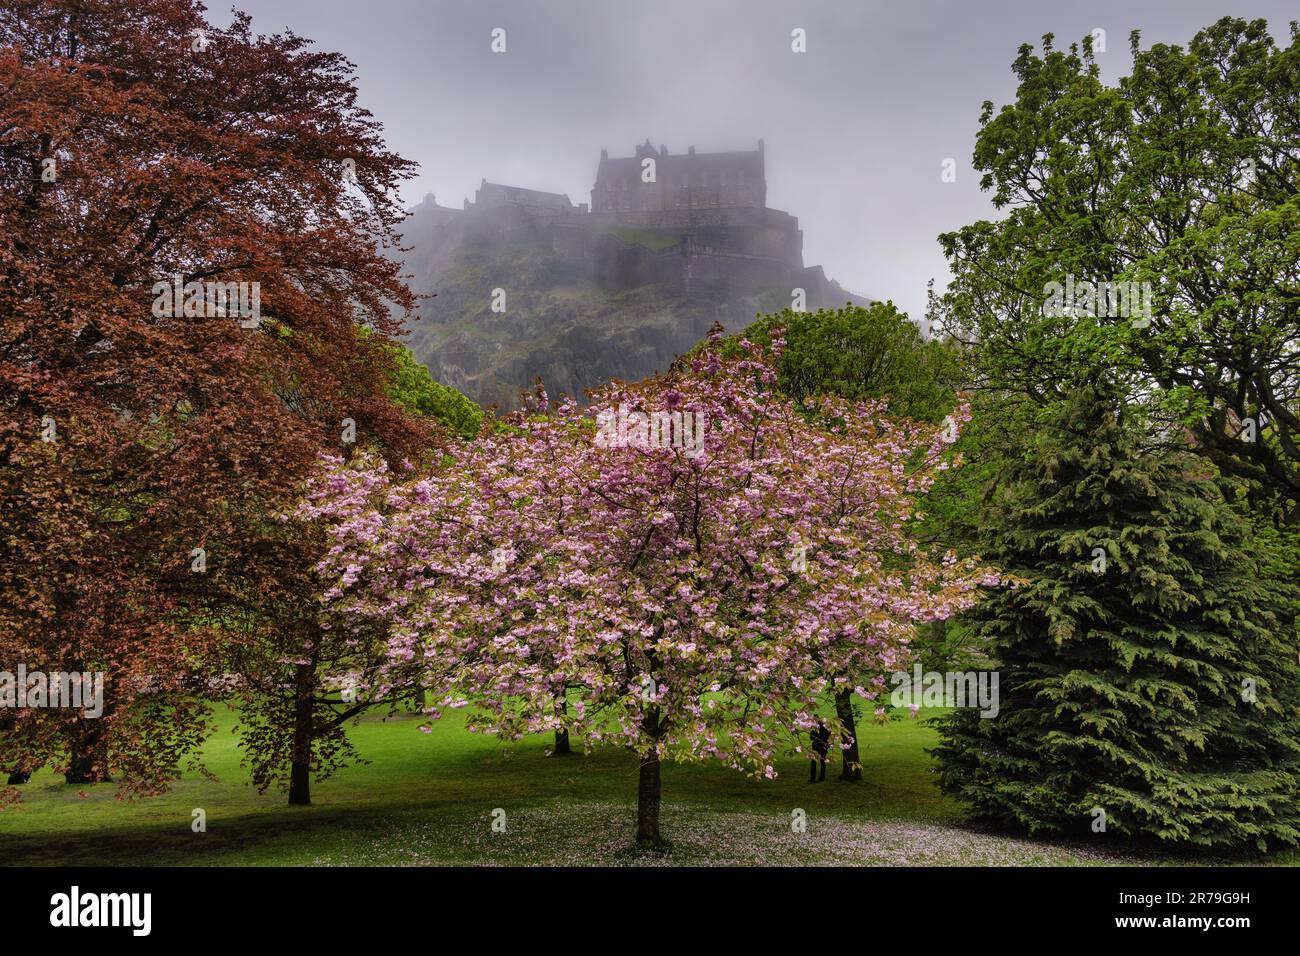 Princes Street Gardens in Edinburgh, Schottland, Großbritannien. Kirschblütenbaum im Frühling und Blick auf Edinburgh Castle im Nebel. Stockfoto